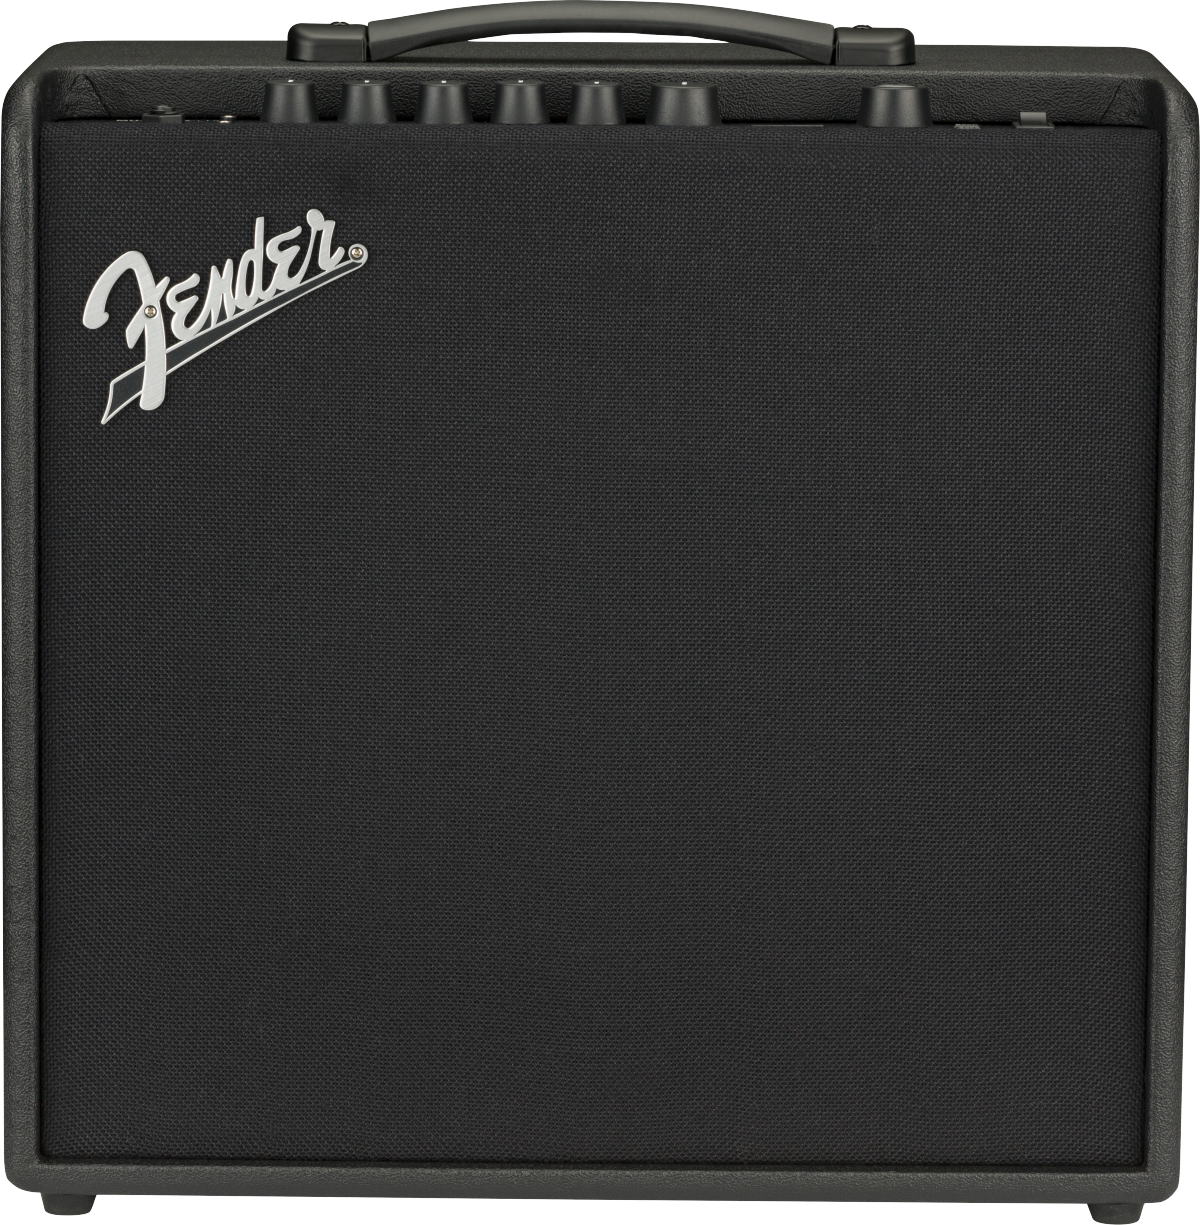 FENDER 2311200000 MUSTANG LT50 USB INTERFAZ AMPLIFICADOR GUITARRA